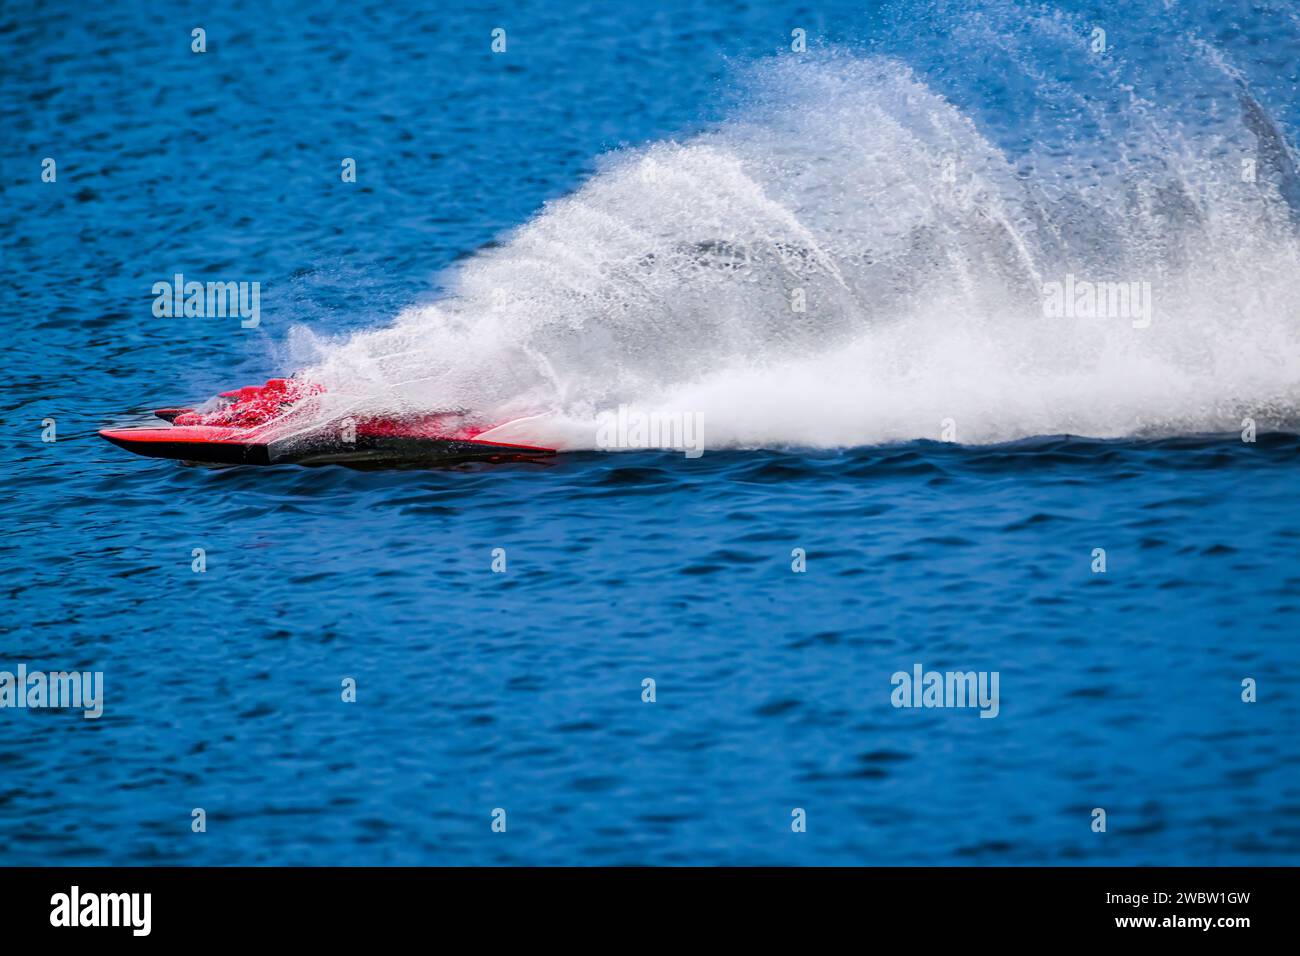 Das RC-Rennboot springt direkt über das Wasser und hinterlässt riesige Sprühnebel und Kräuselungen. Stockfoto